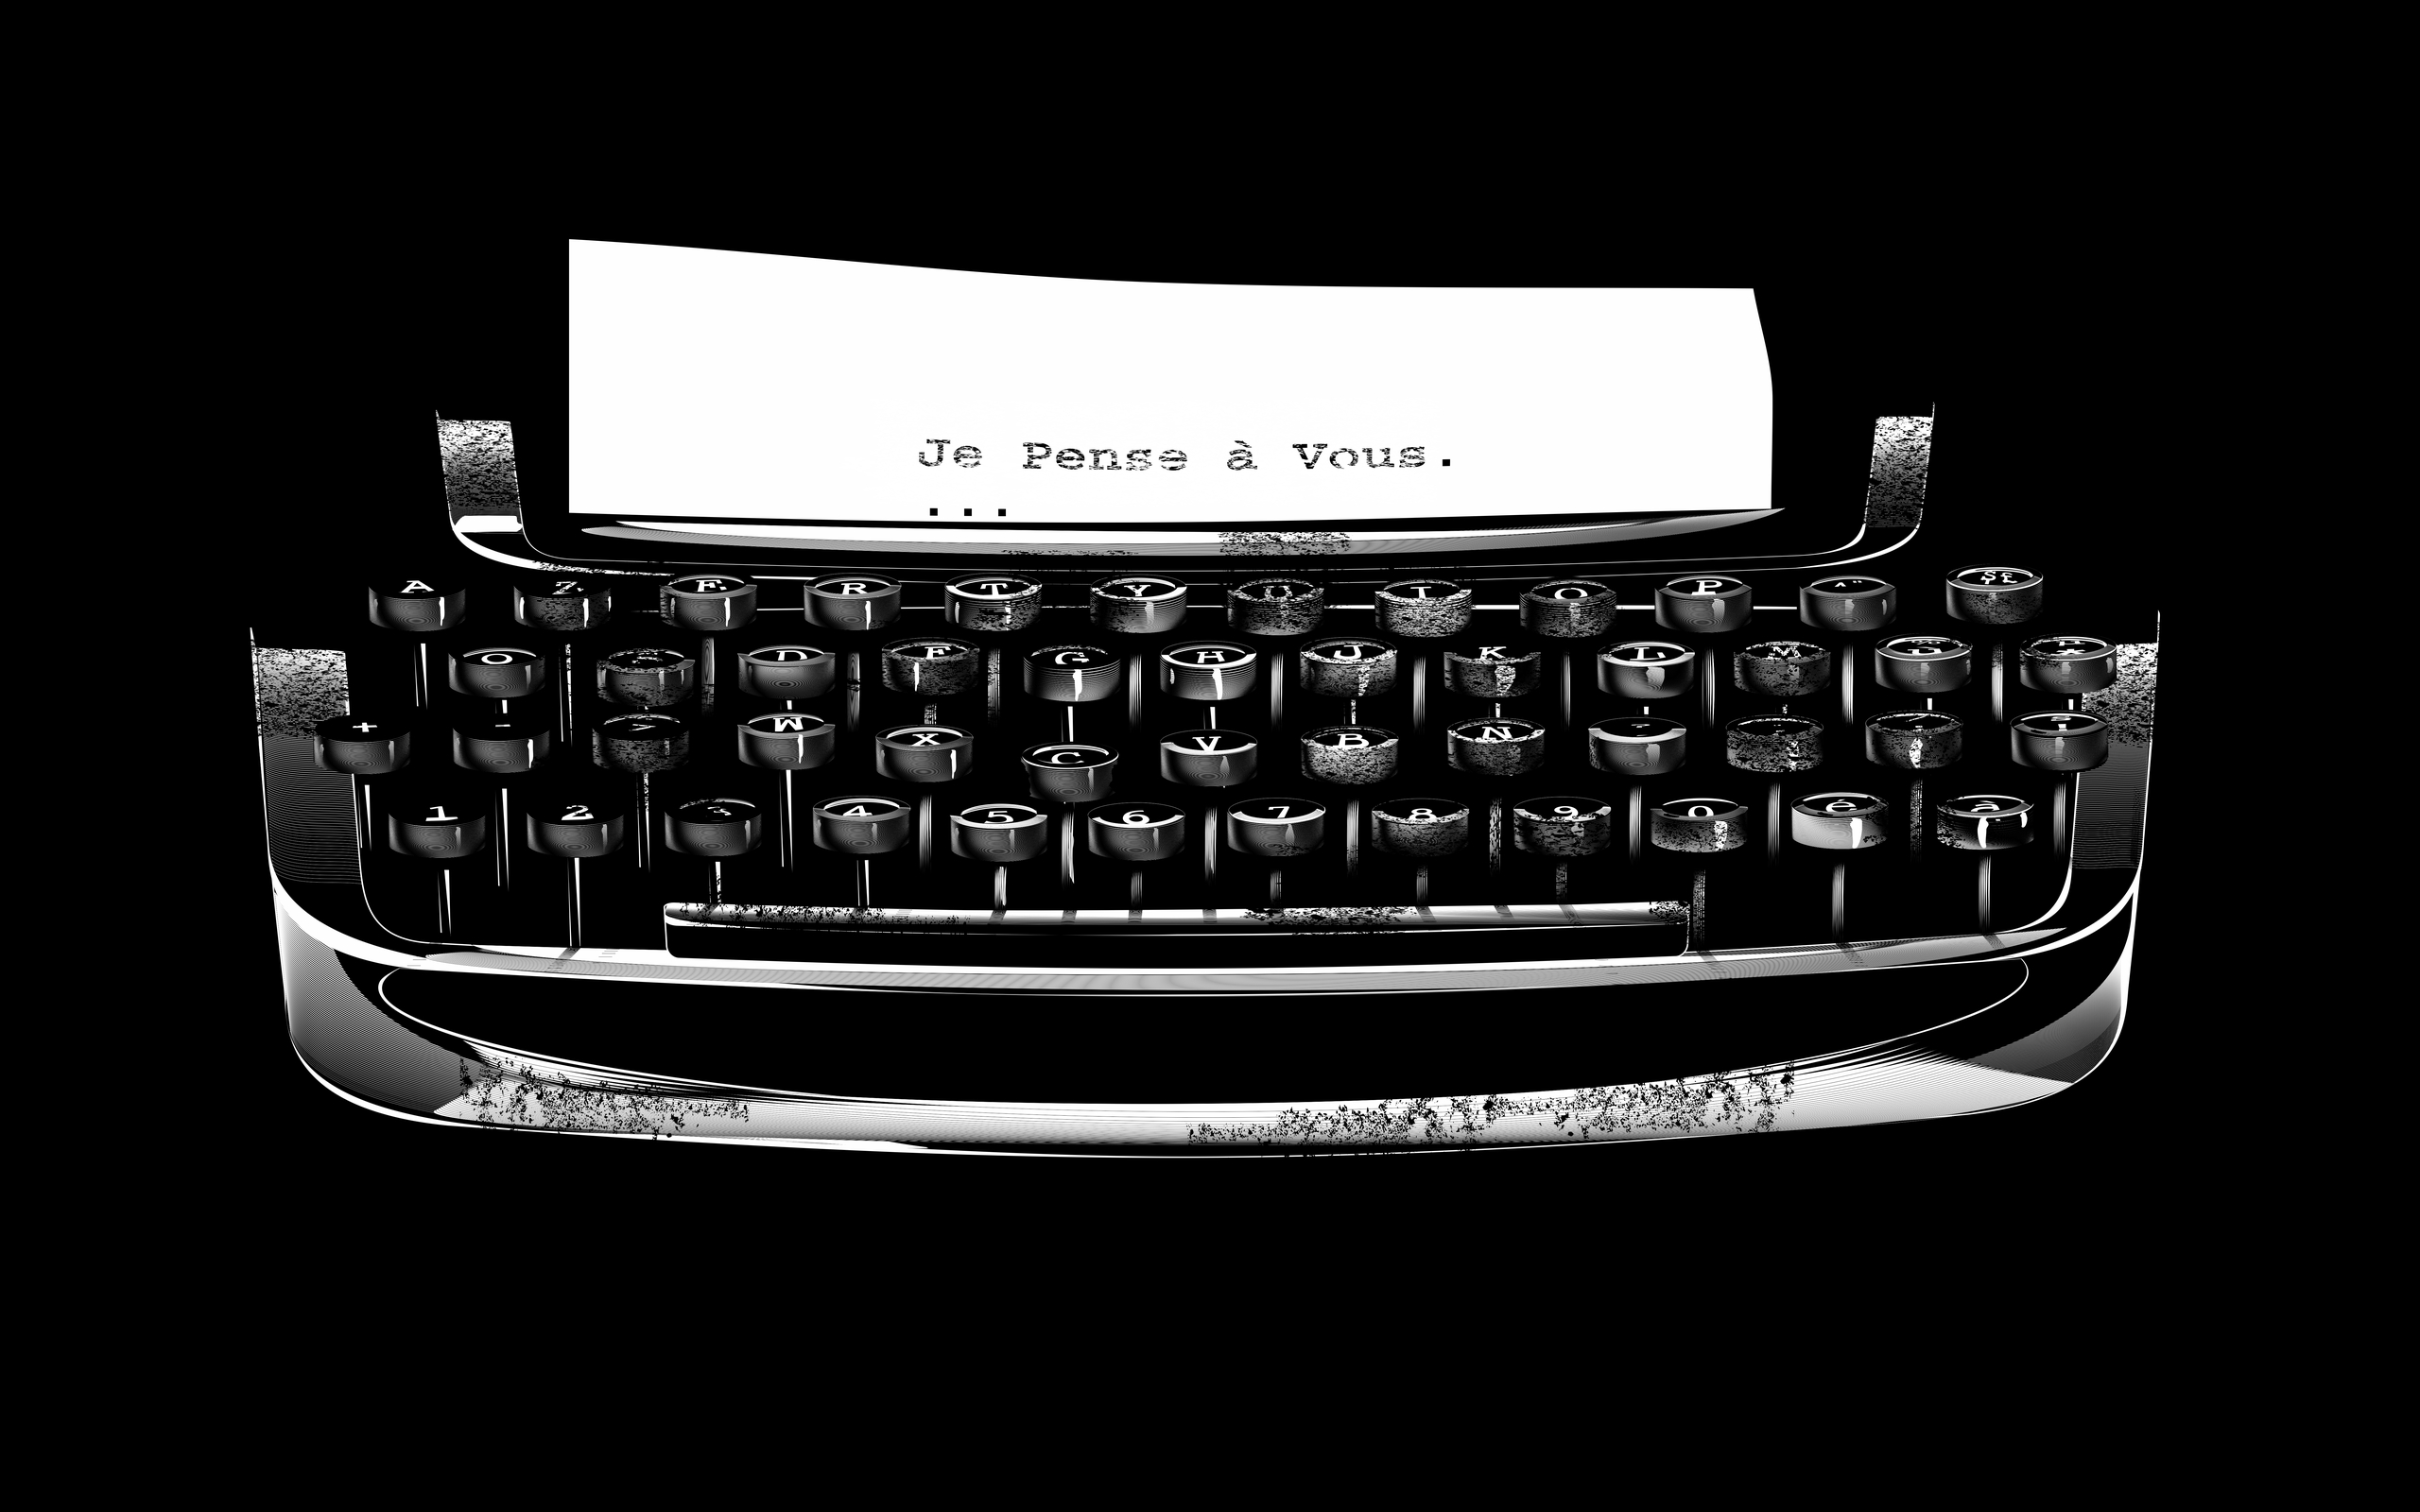 man made, typewriter